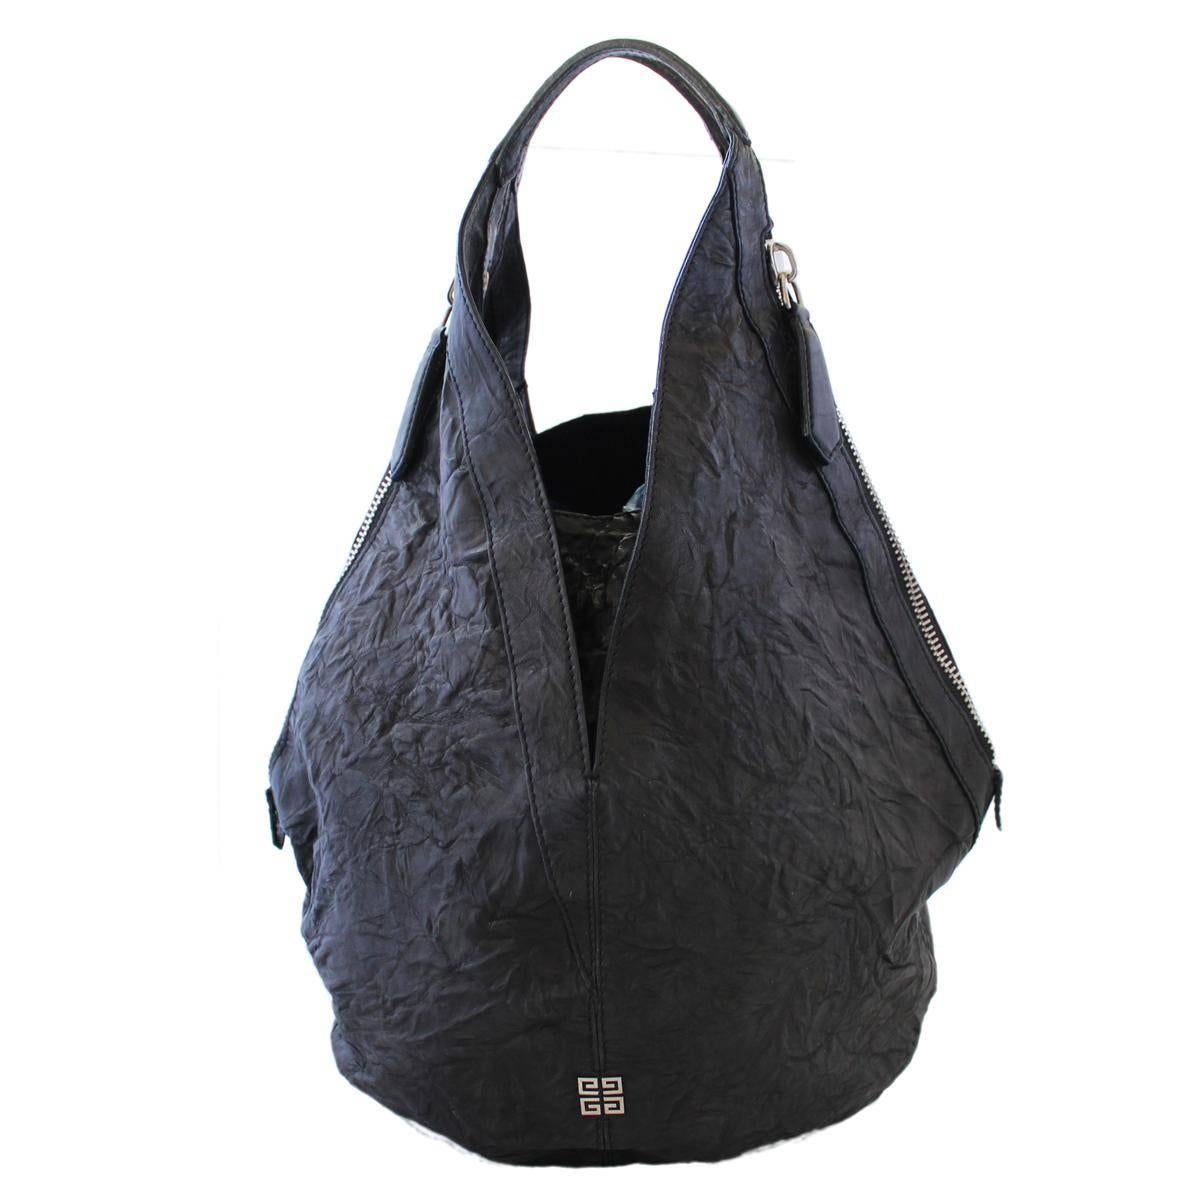 Givenchy Black Tote Bag